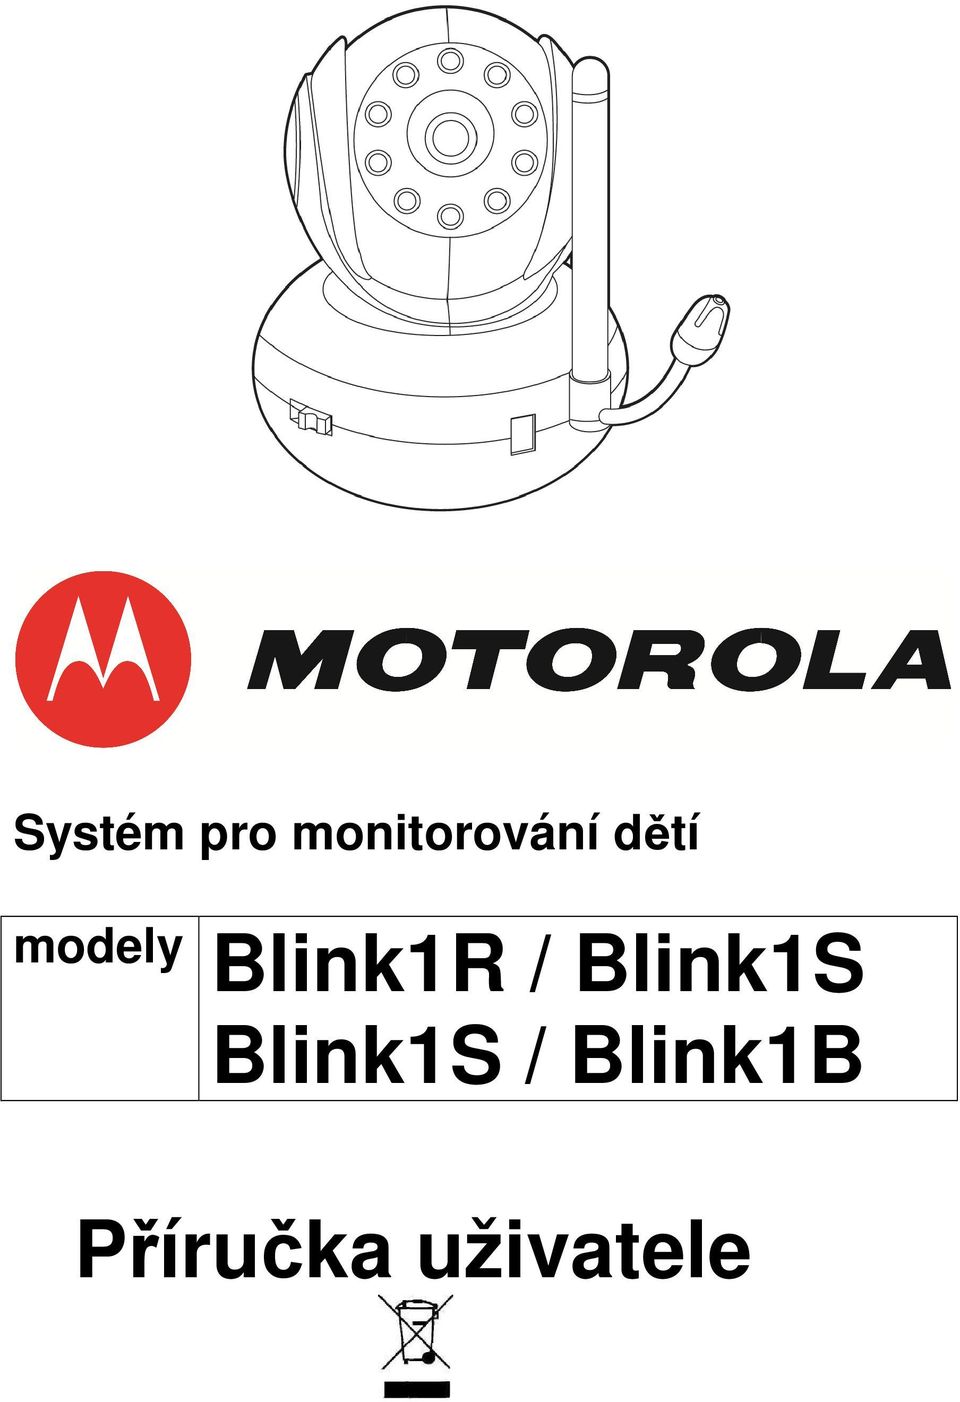 modely Blink1R /